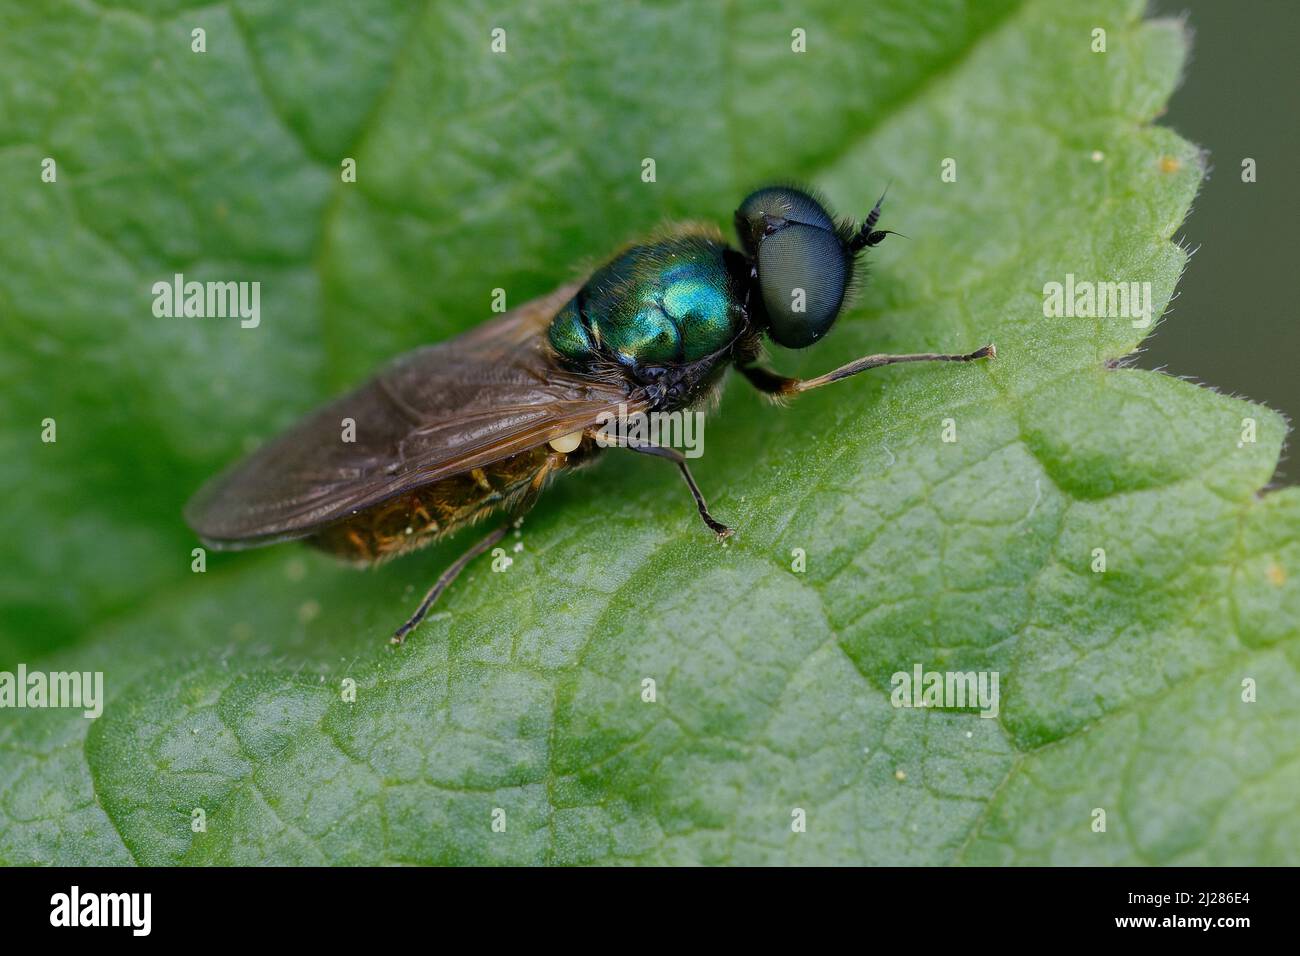 Soldier fly (Chloromyia formosa) on a leaf Stock Photo